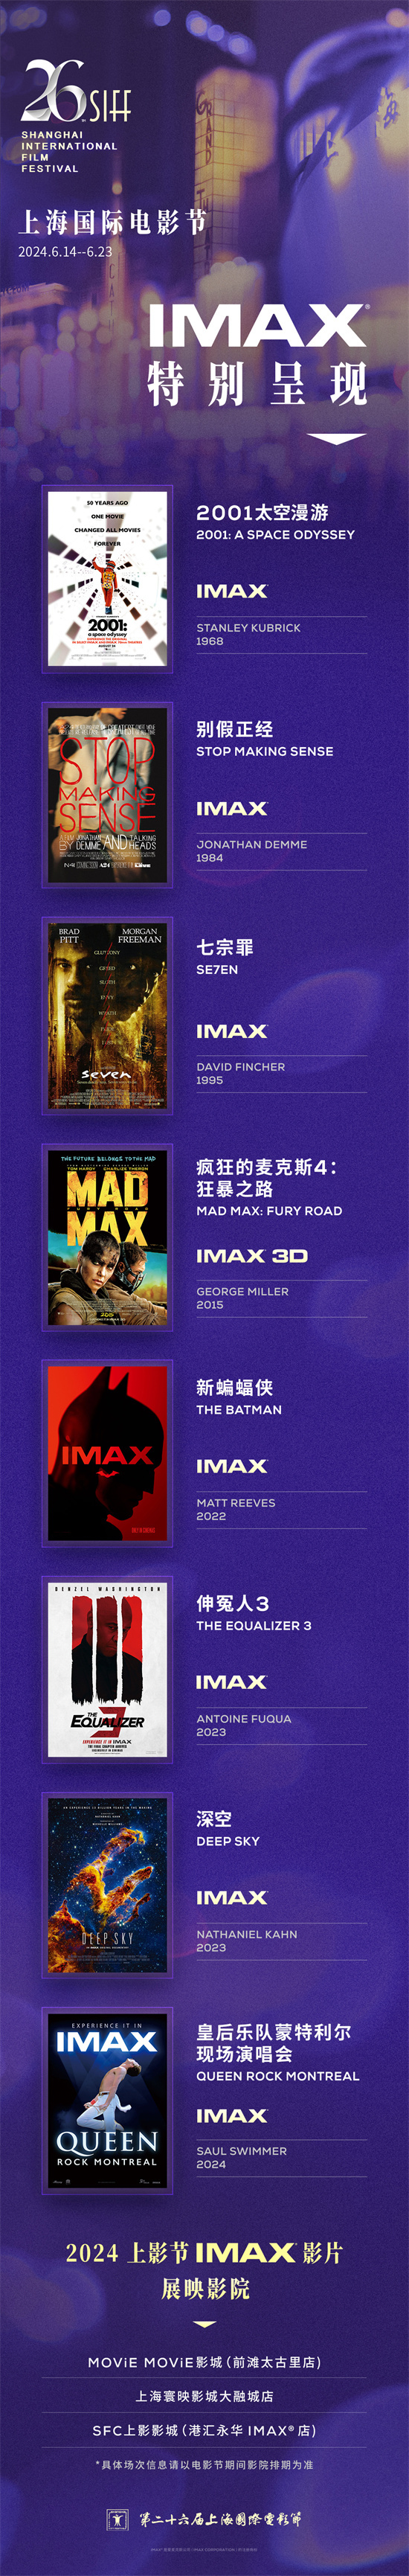 第26届上影节曝IMAX片单 八部佳作开启银幕盛宴  第1张